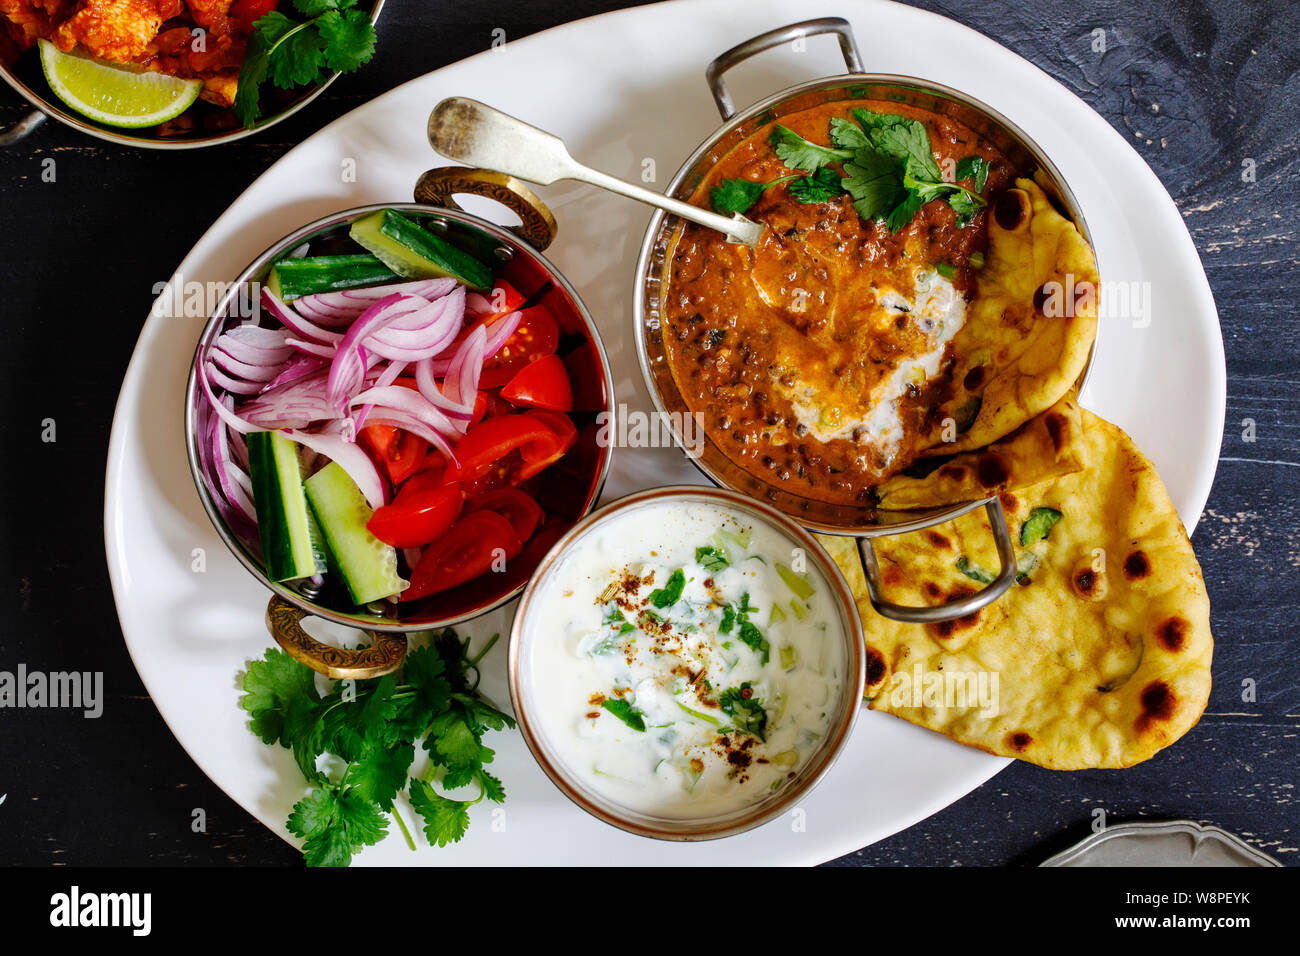 Repas curry indien noir avec les lentilles dal, salade, pain naan et raita Banque D'Images